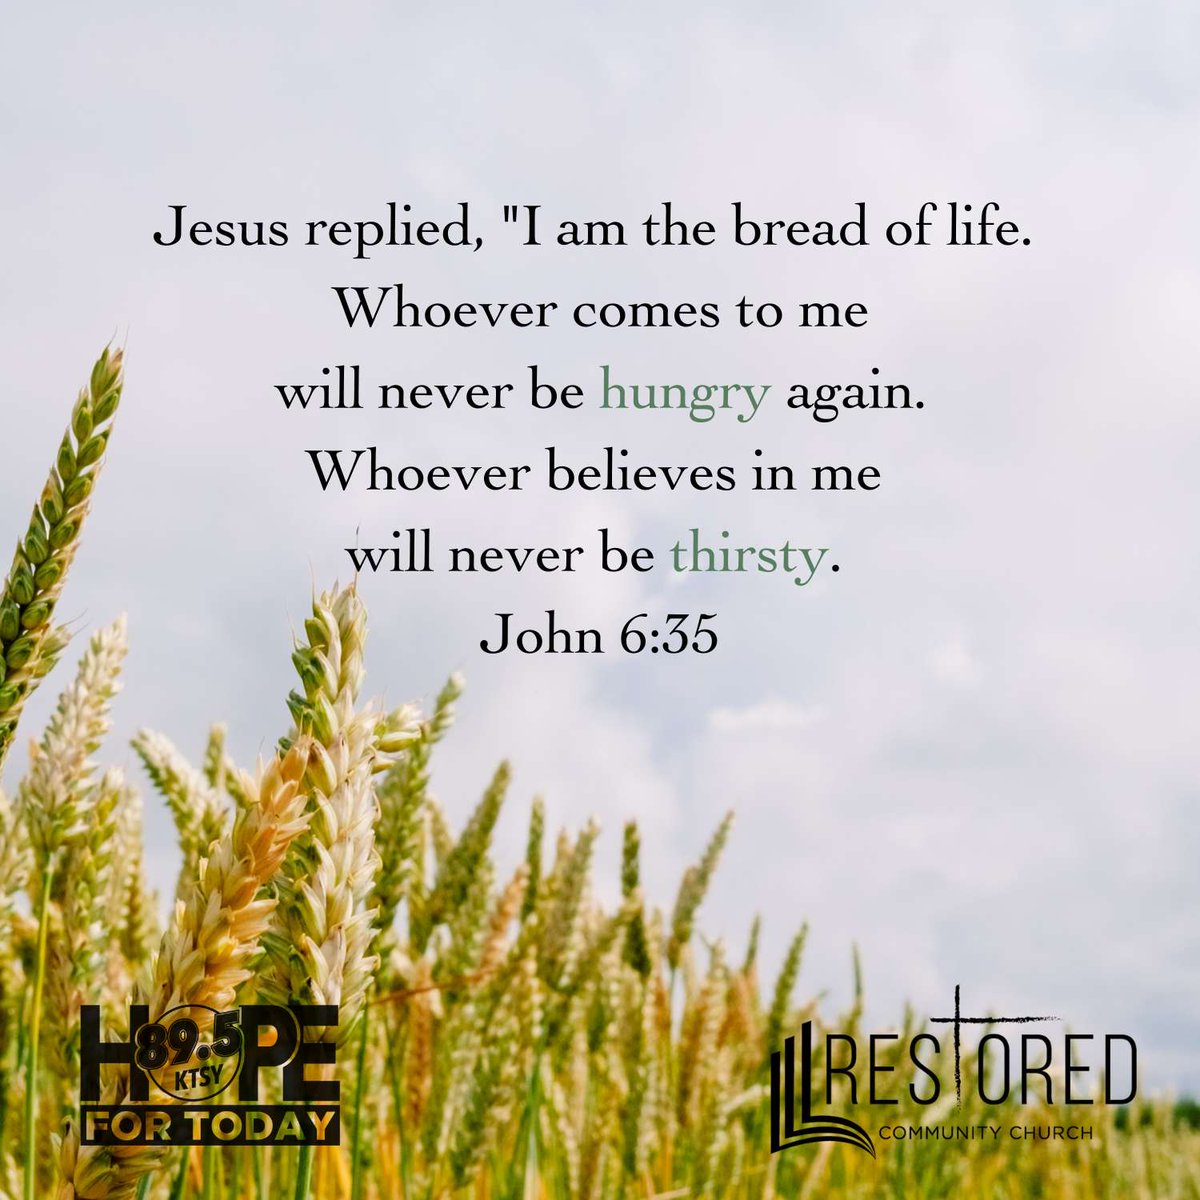 Everything we need is in Jesus. #hopefortoday #choosehope #bible #scripture